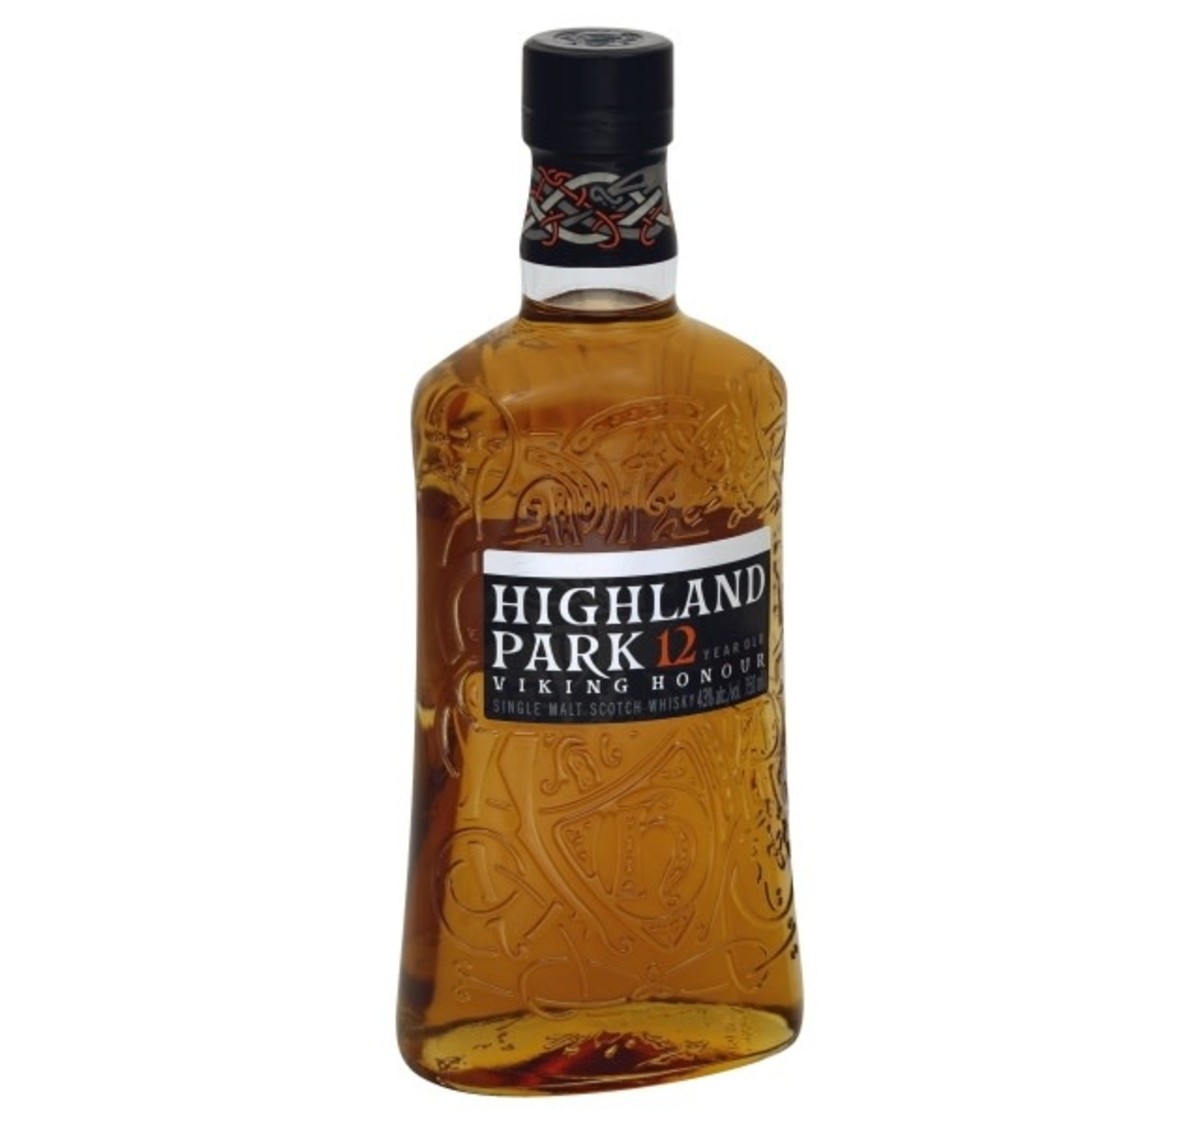 Highland Park HIGHLAND PARK 12 YR VIKING HONOR - Dixie Liquor